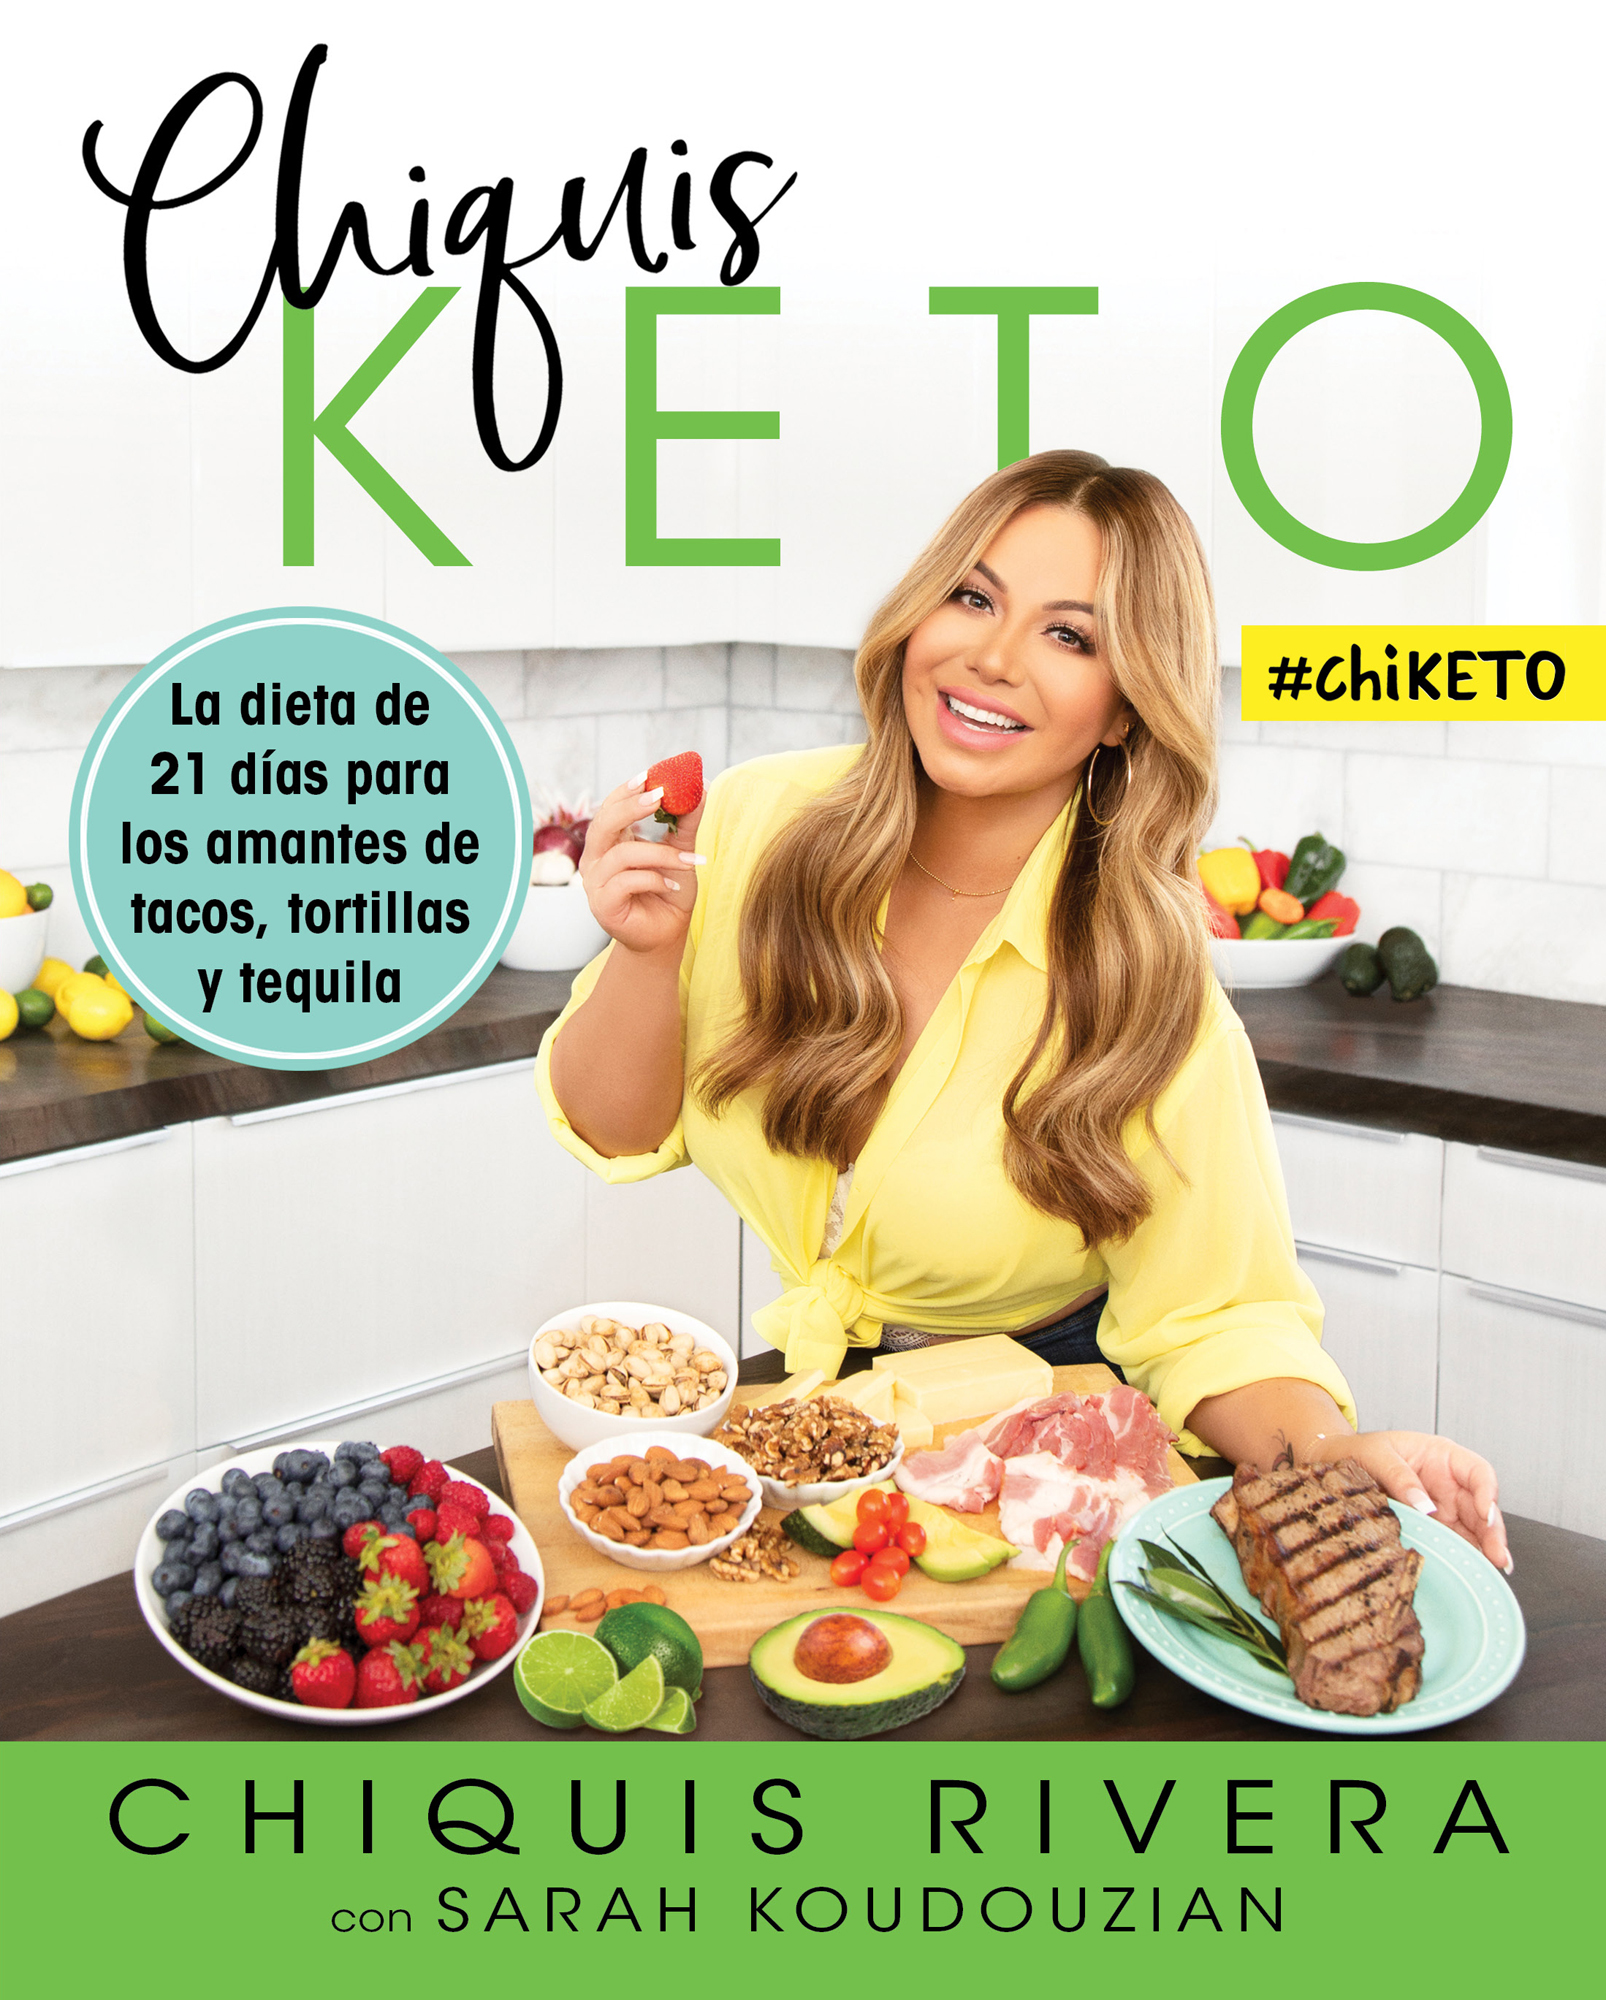 Chiquis Keto Spanish edition La dieta de 21 días para los amantes de tacos tortillas y tequila - image 1